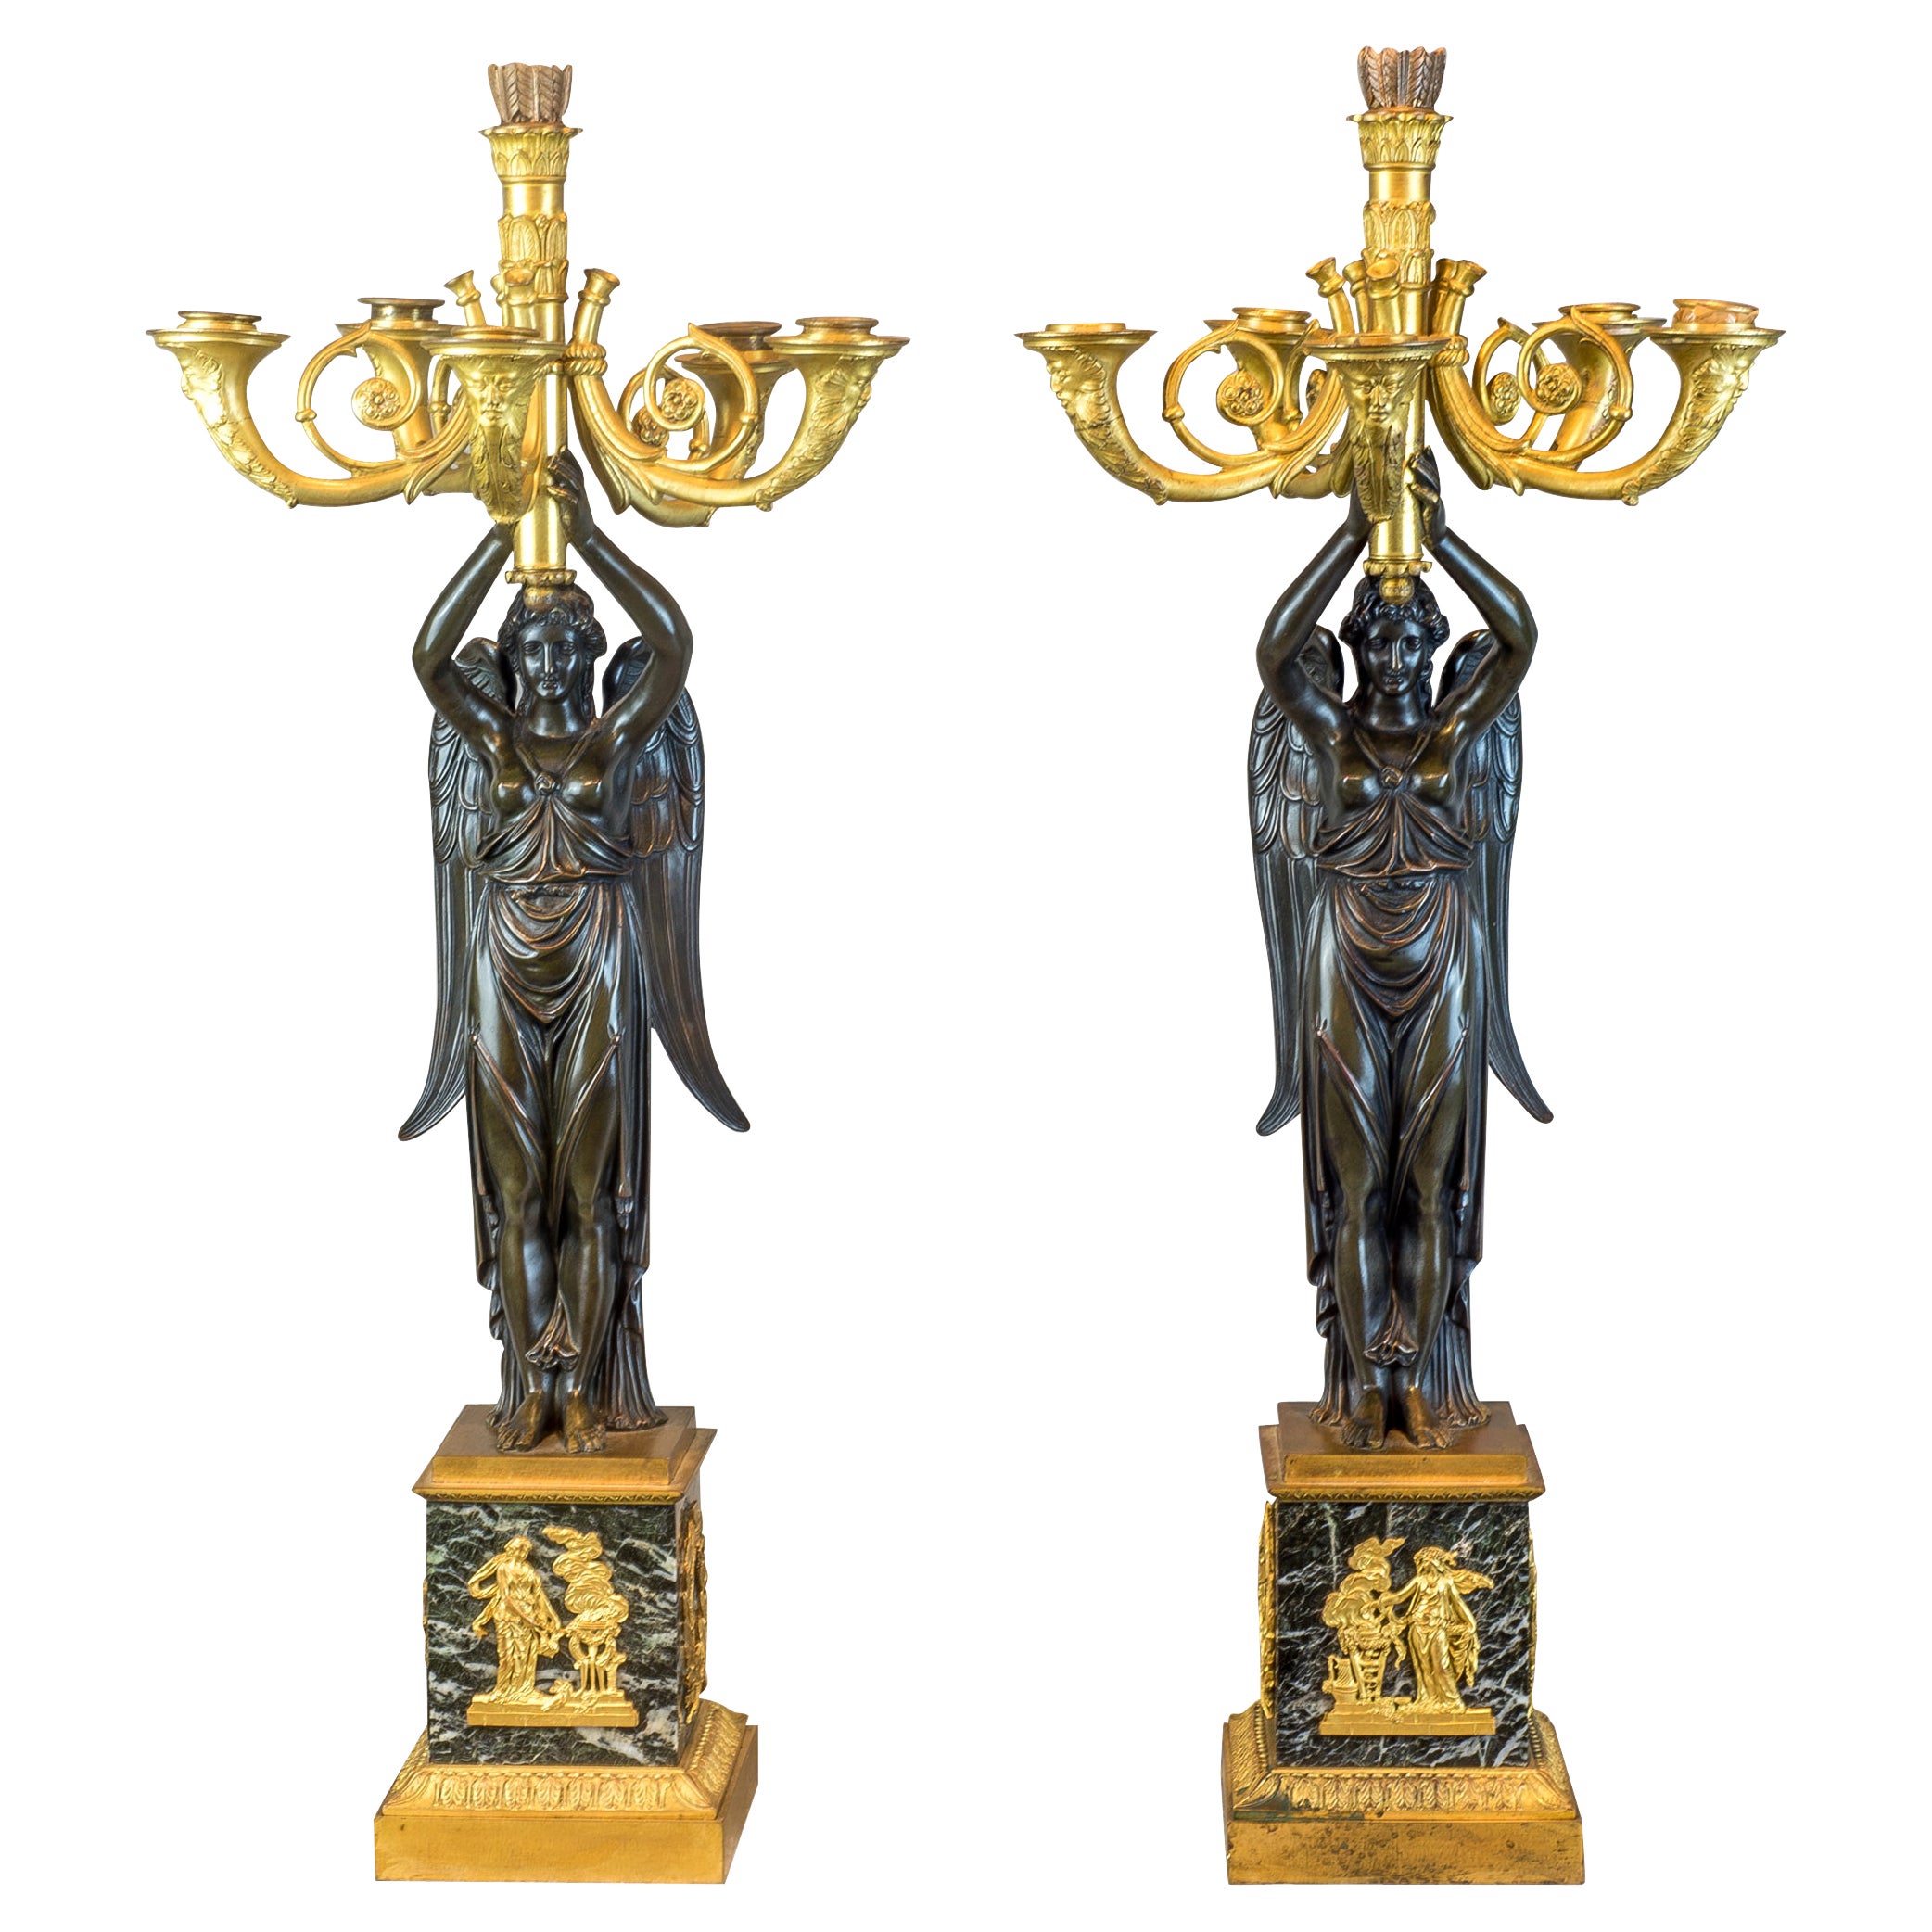  Sechs figurale Empire-Kandelaber aus vergoldeter und patinierter Bronze mit sechs Lichtern